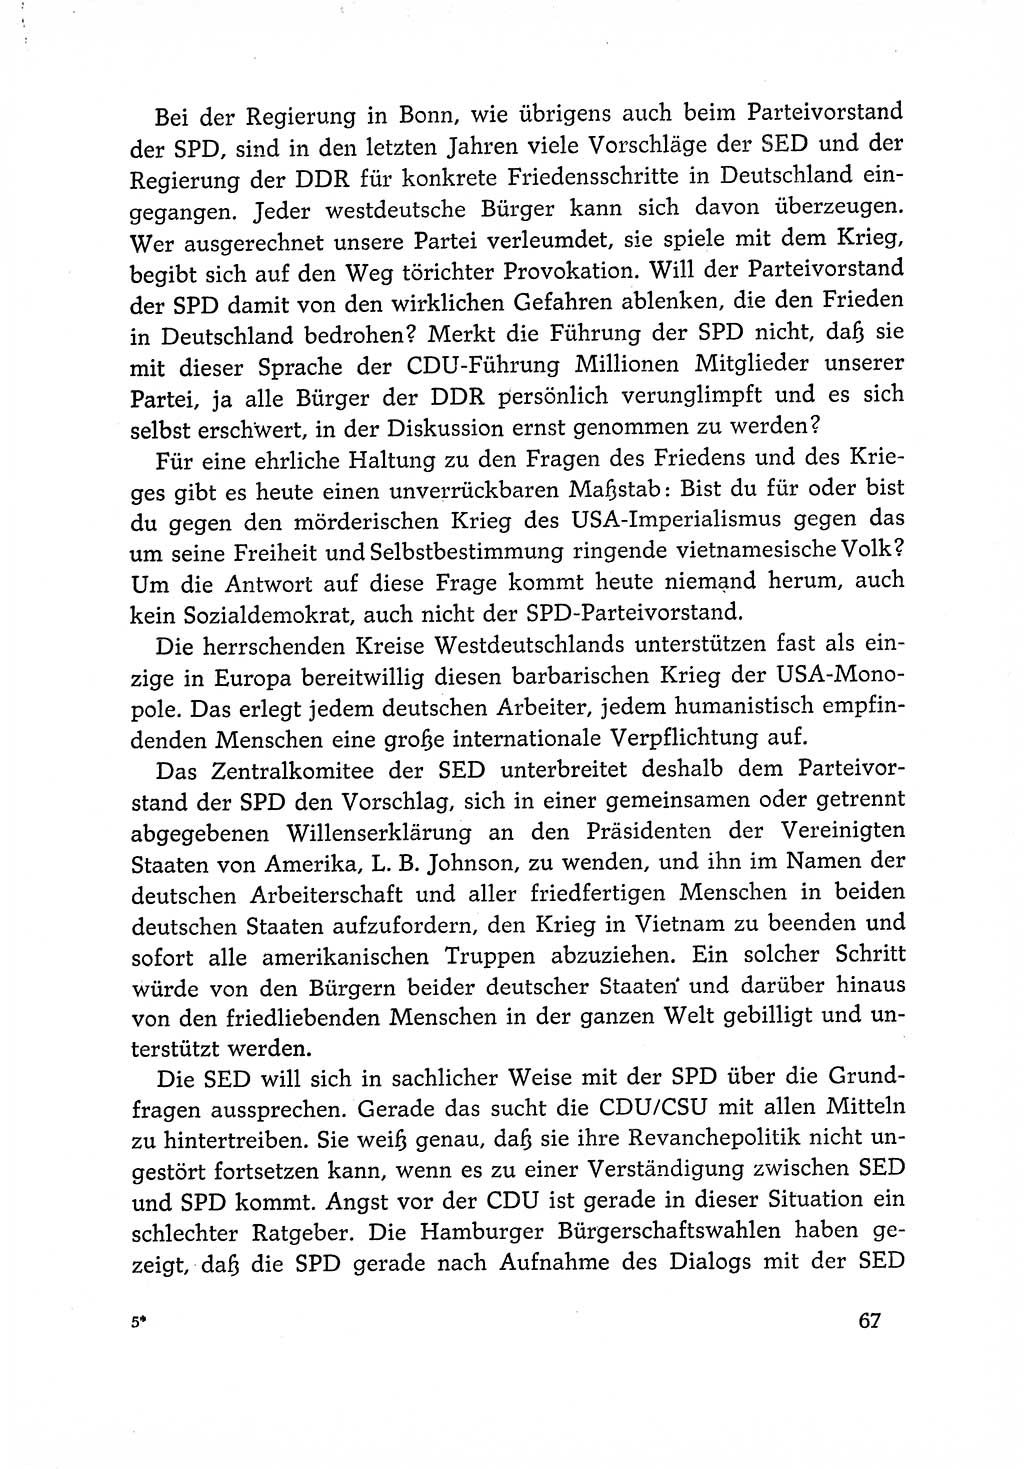 Dokumente der Sozialistischen Einheitspartei Deutschlands (SED) [Deutsche Demokratische Republik (DDR)] 1966-1967, Seite 67 (Dok. SED DDR 1966-1967, S. 67)